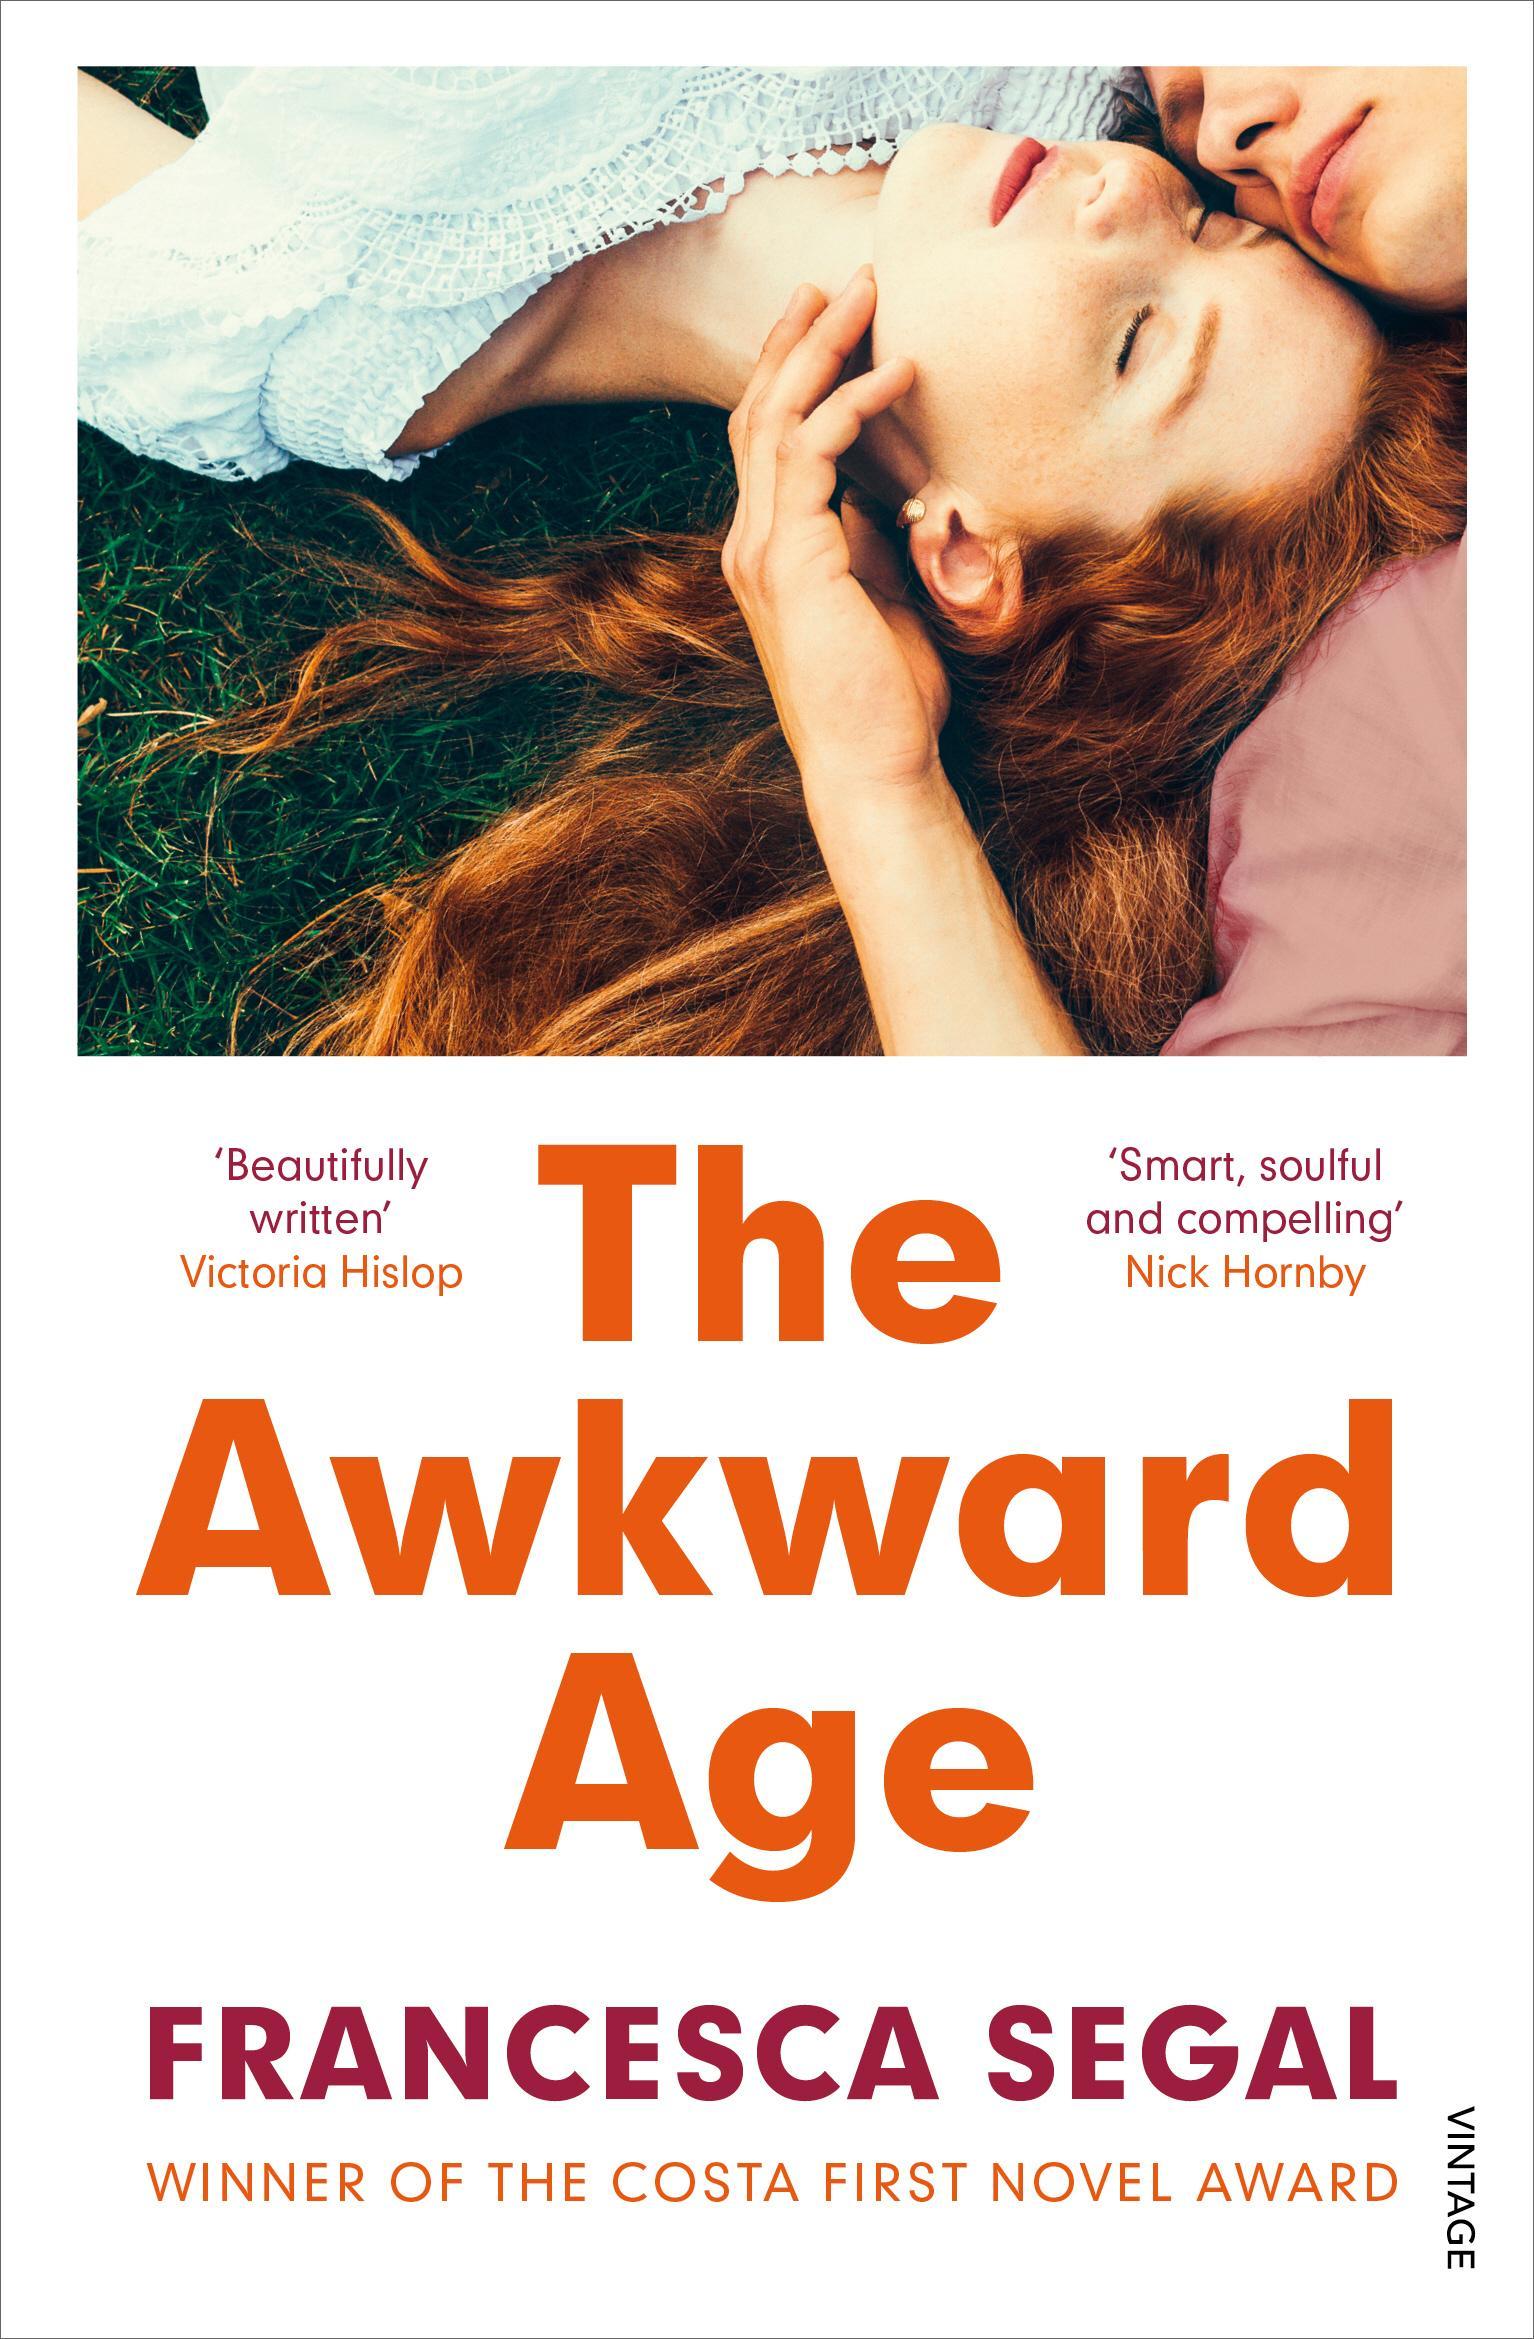 Awkward Age - Francesca Segal